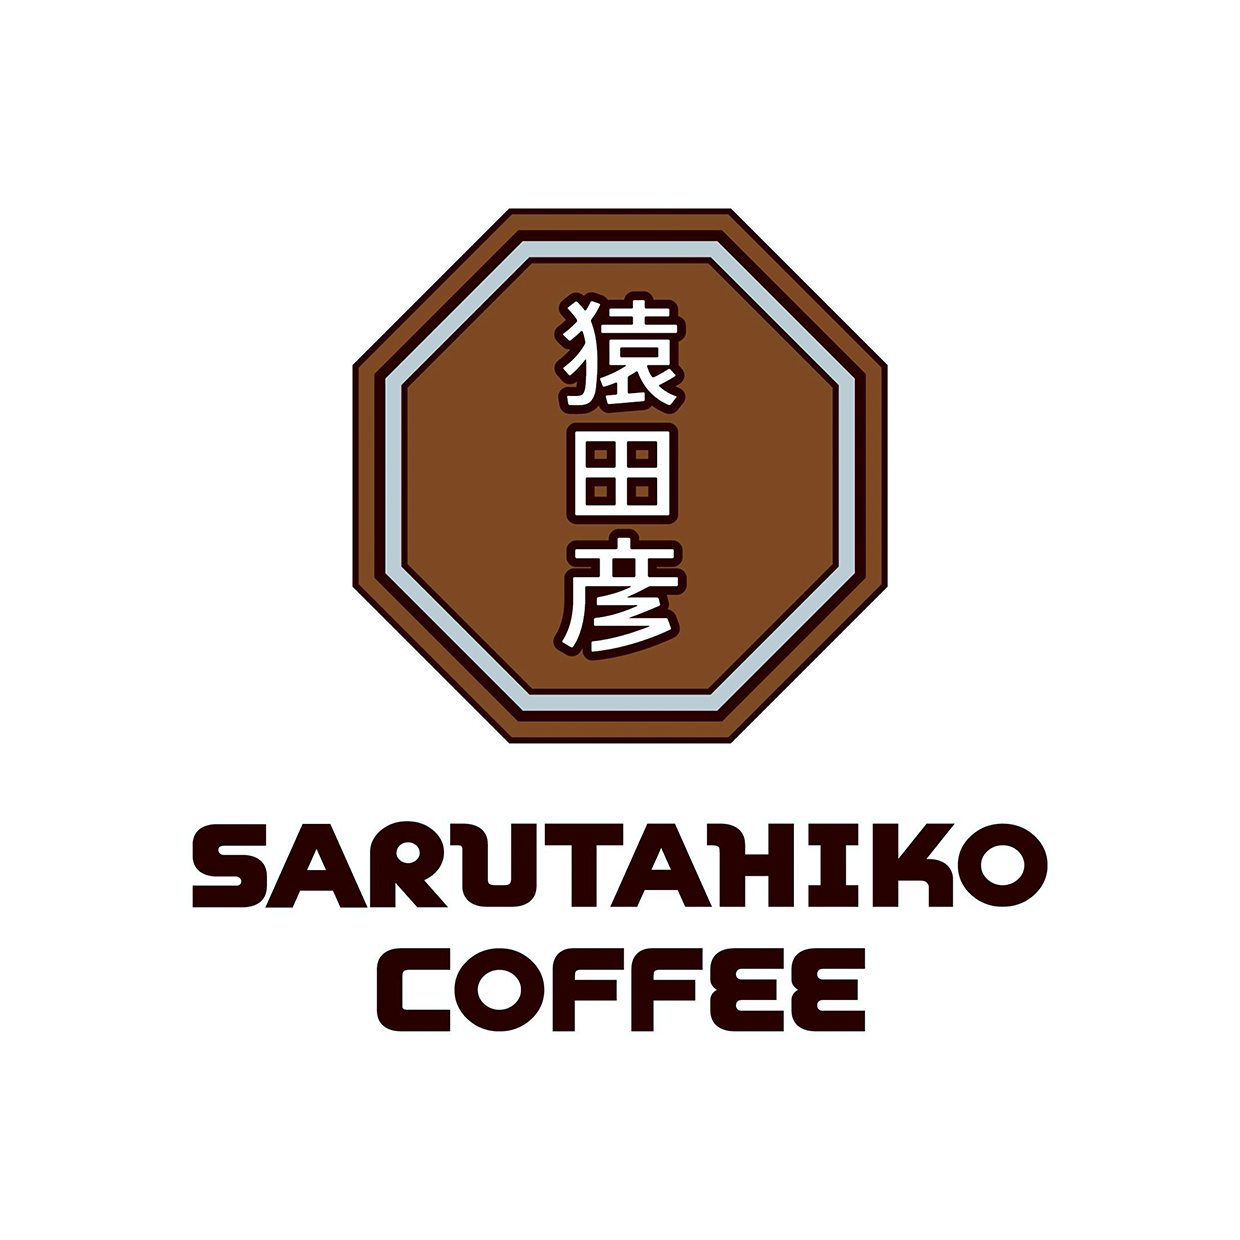 猿田彦珈琲 Sarutahiko Coffee